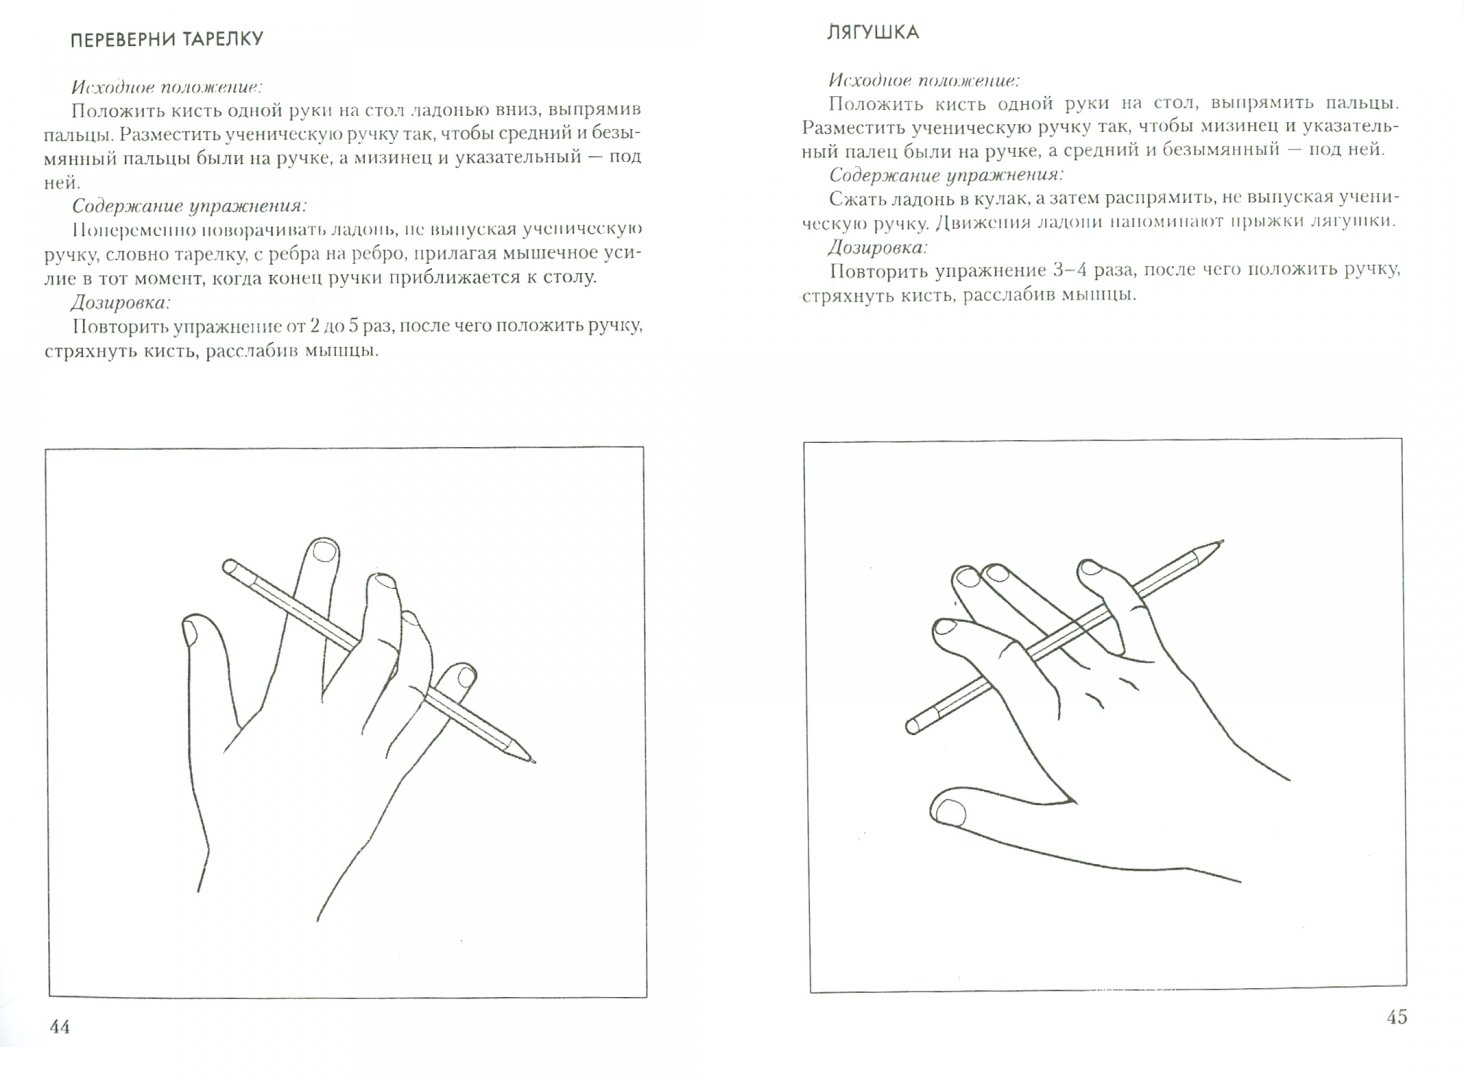 Моторика пальцев упражнения. Упражнения для развития моторики пальцев рук у детей. Нейропсихологические упражнения пальчиковые. Нейропсихологические упражнения для развития мелкой моторики. Нейропсихологические упражнения для рук для дошкольников.